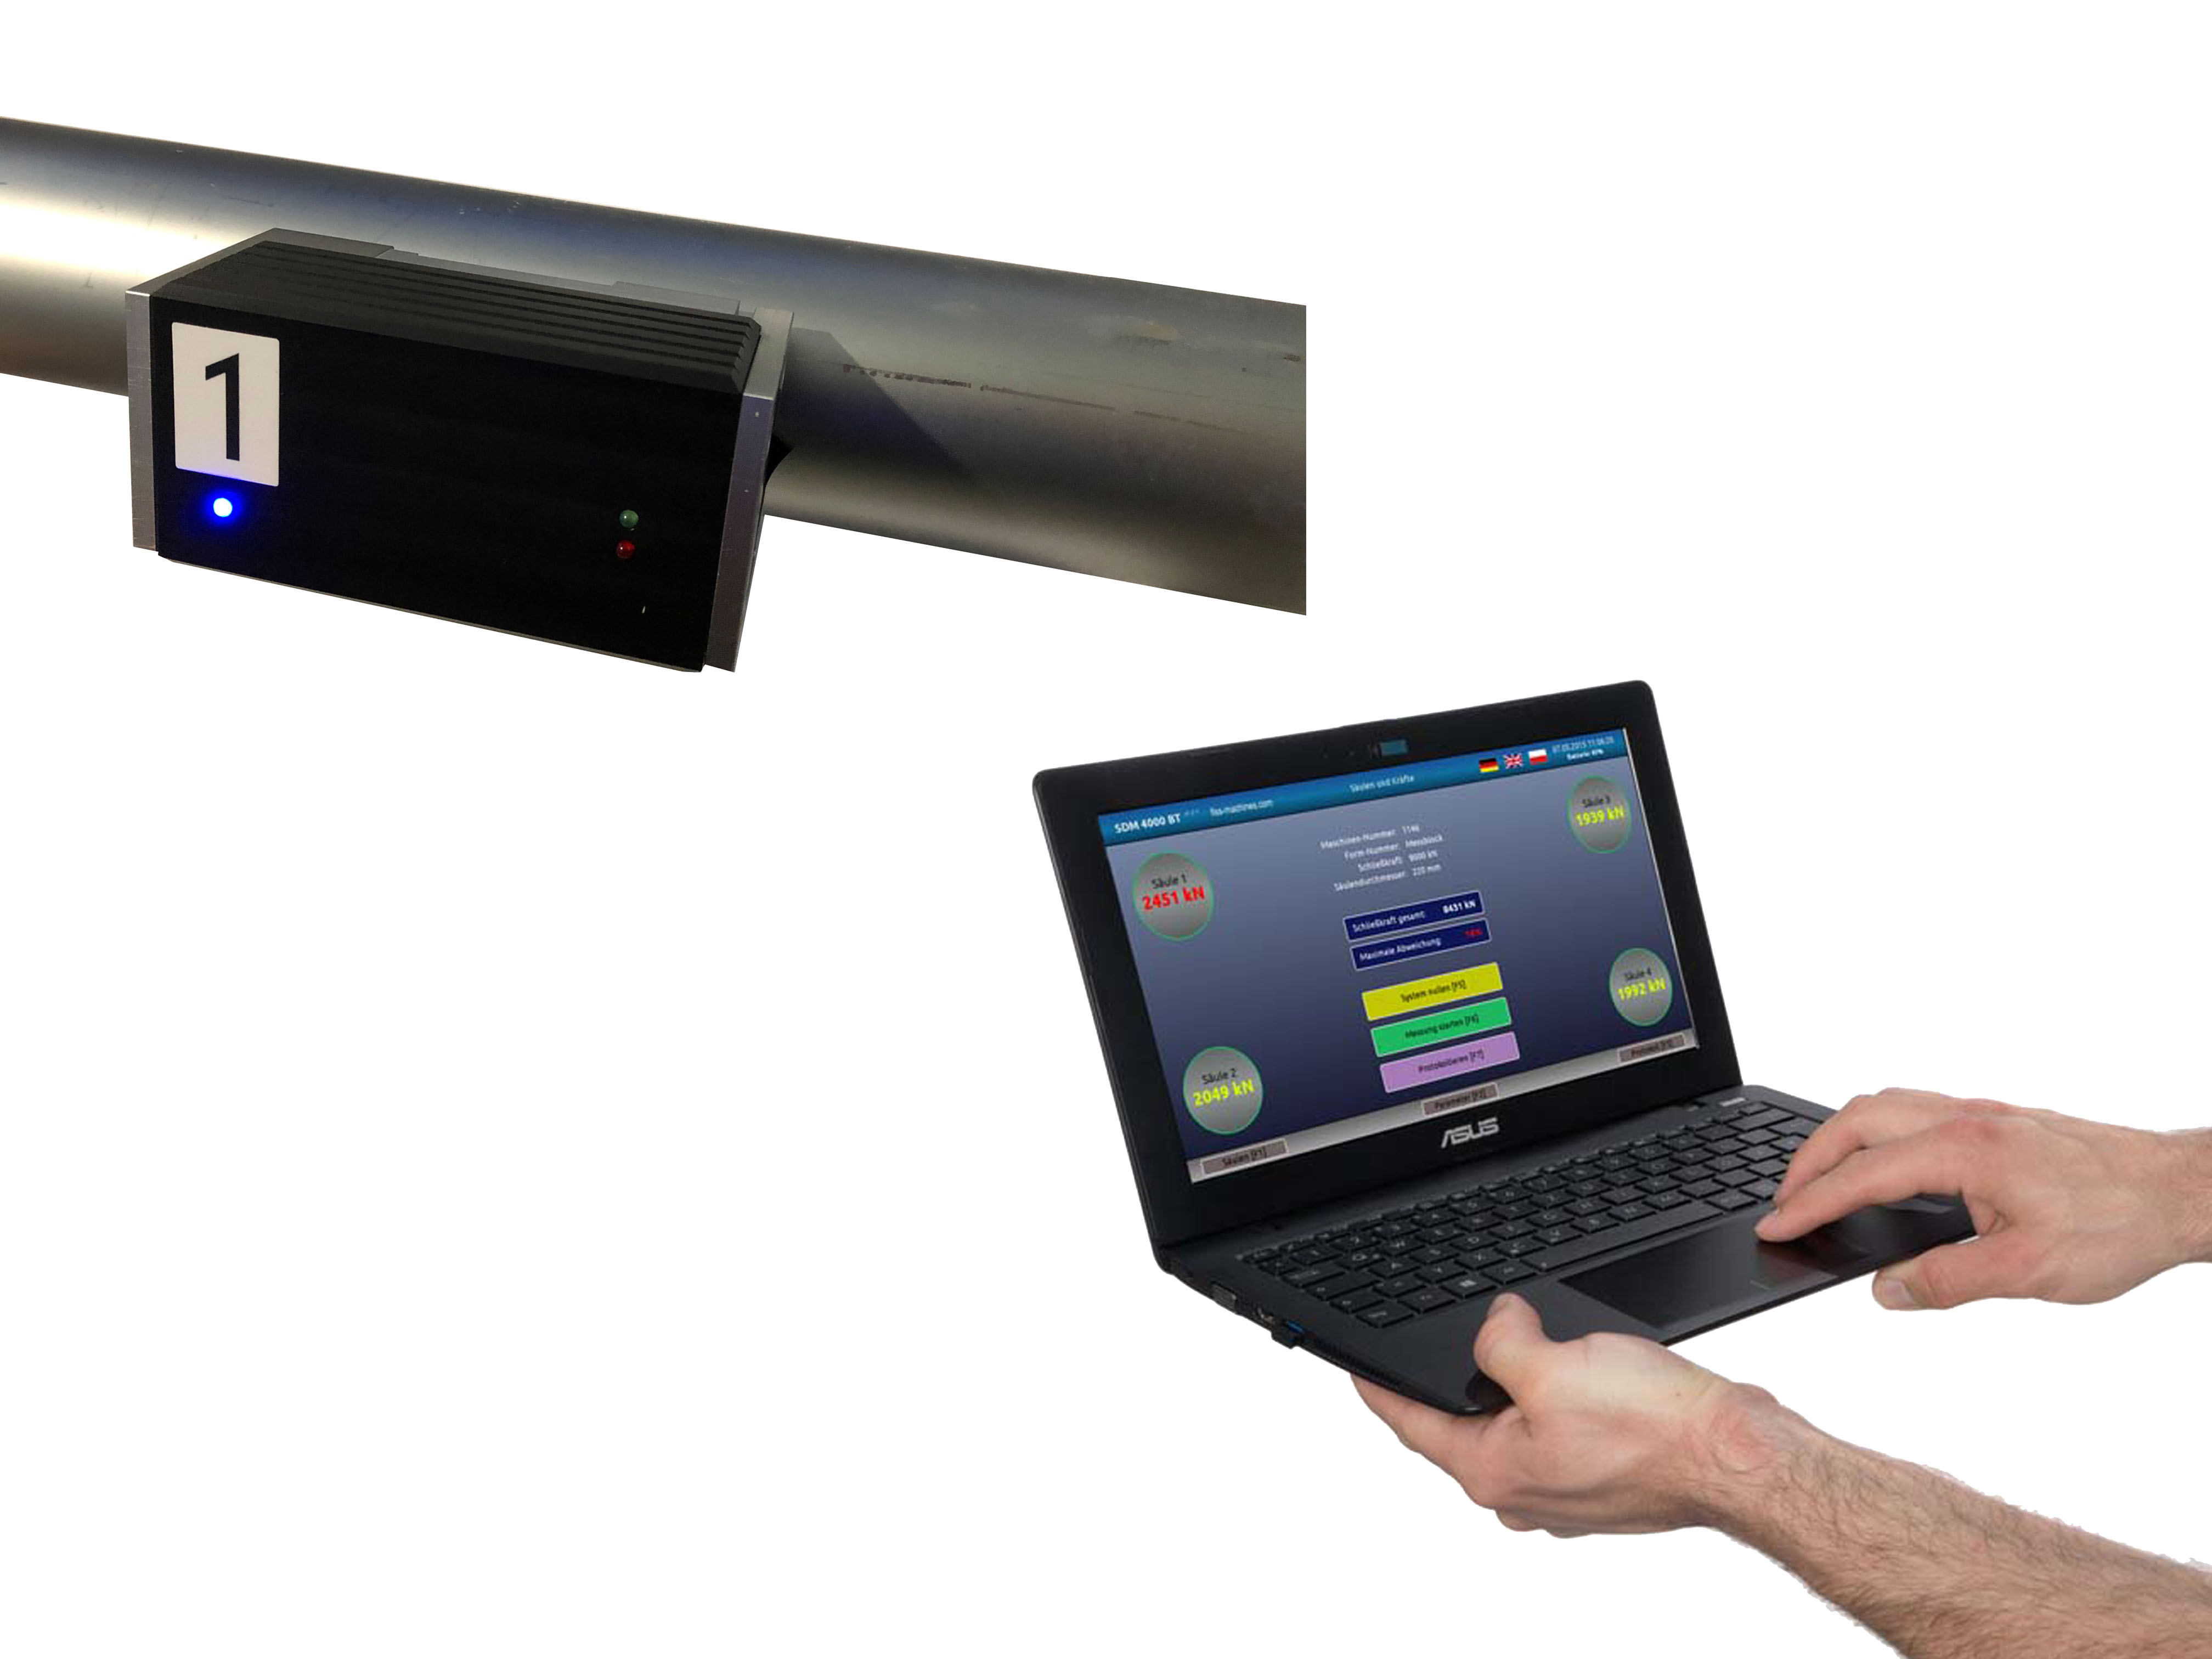 Sistema de medición de barras de acoplamiento inteligente SDM 4000 RS-1 inalámbrico